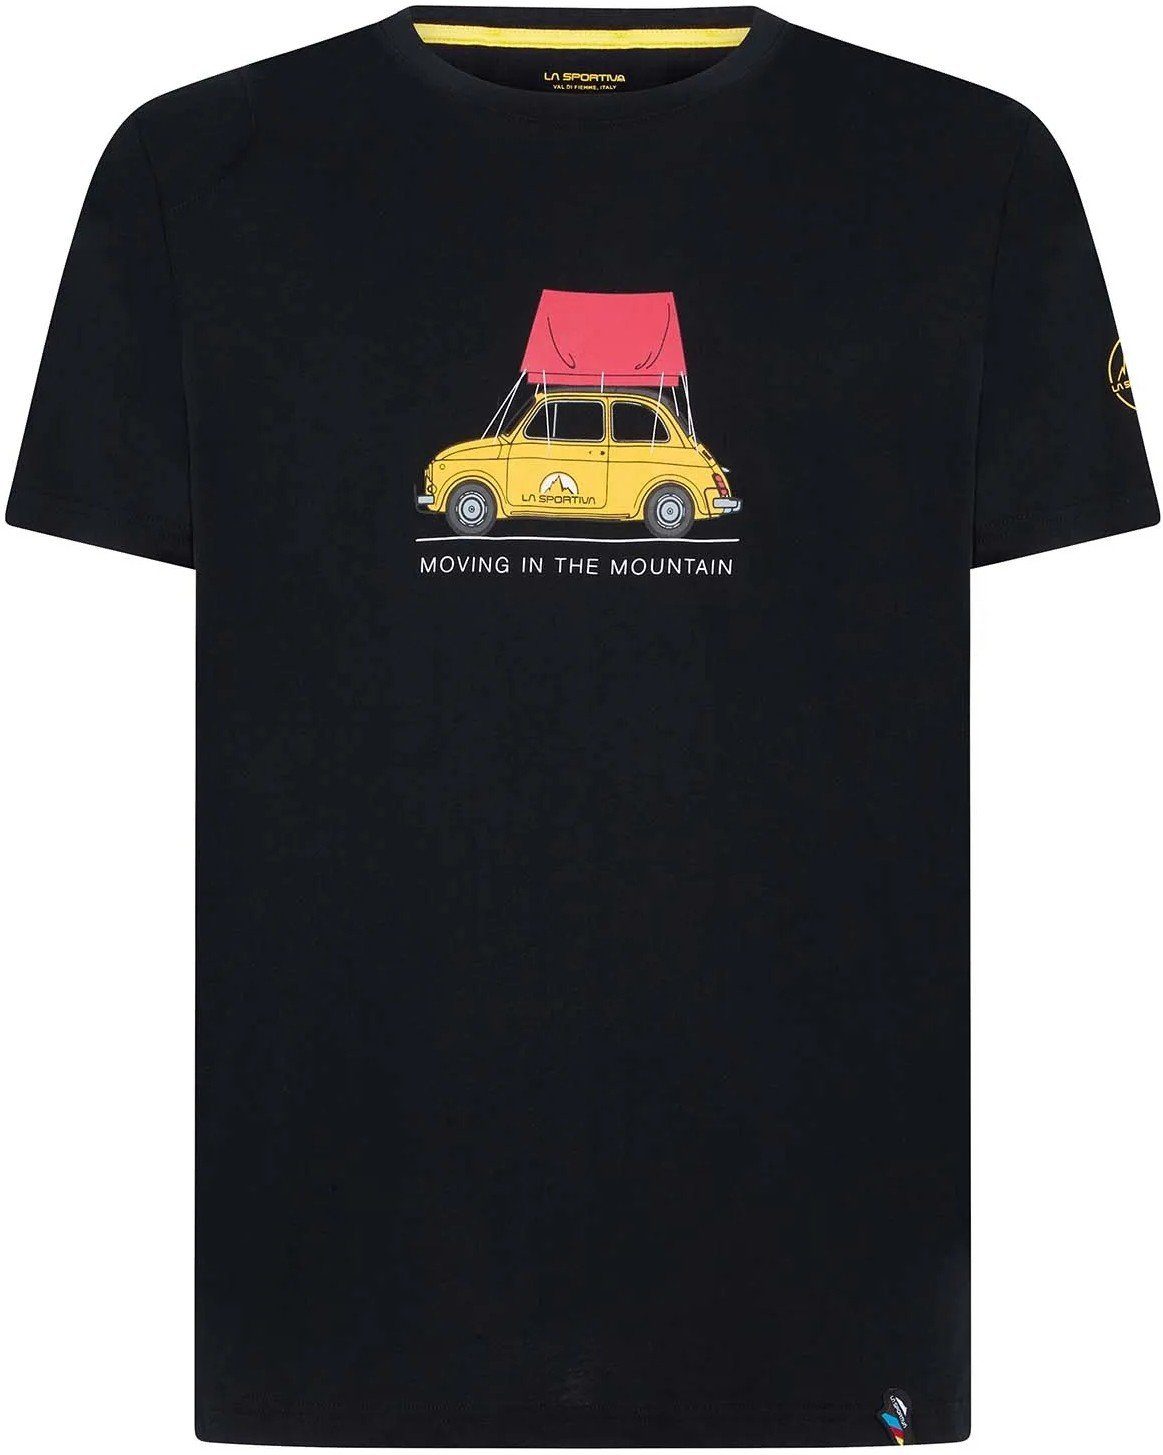 La Sportiva T-Shirt Cinquecento T-Shirt black